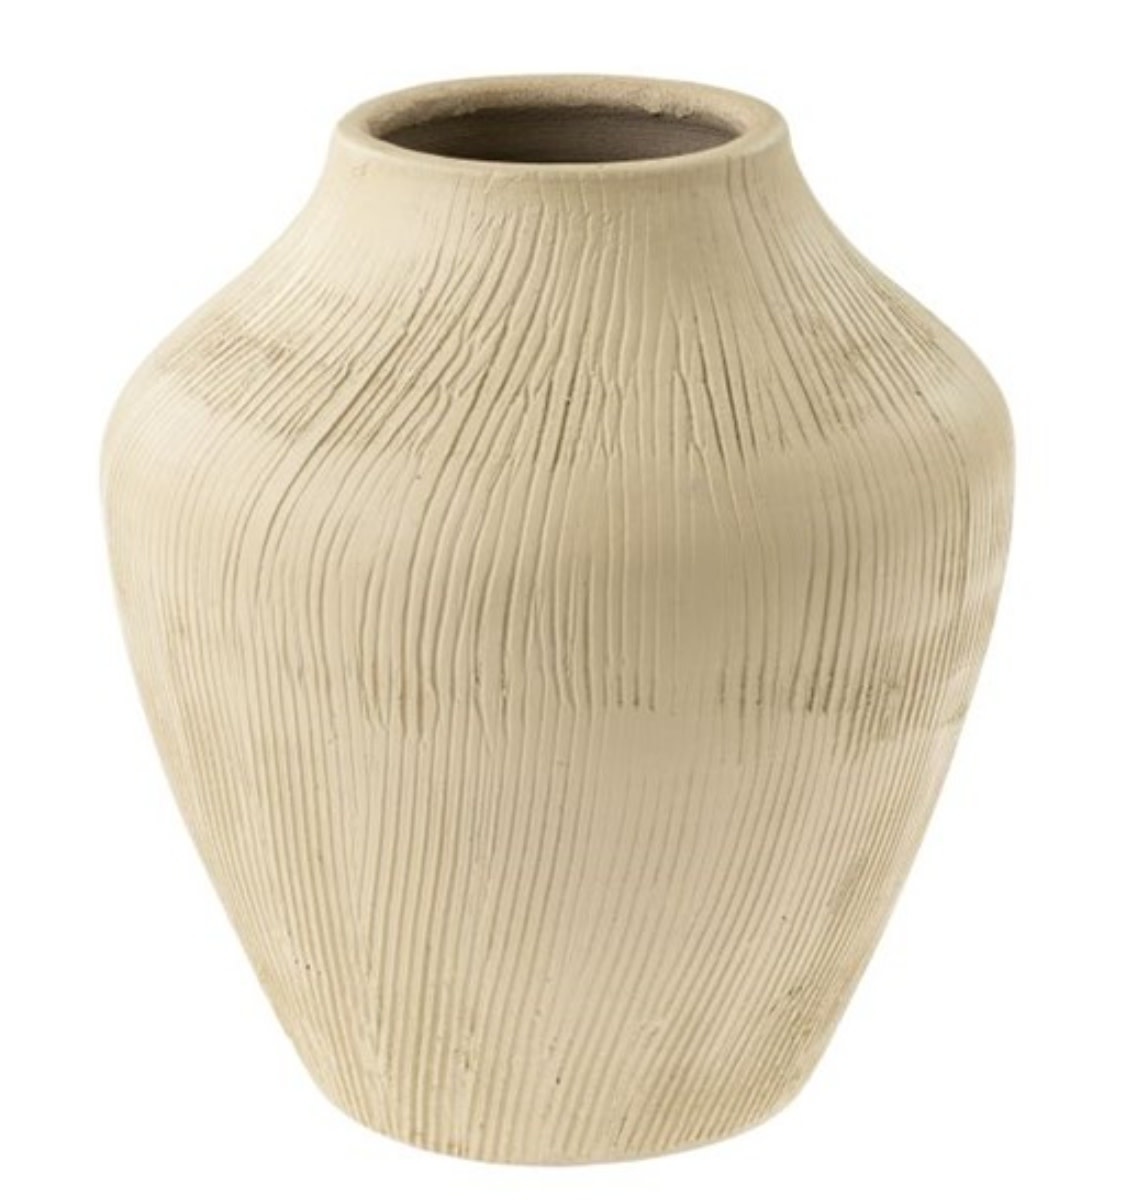 Della Terracotta Vase, Small 8x9.5